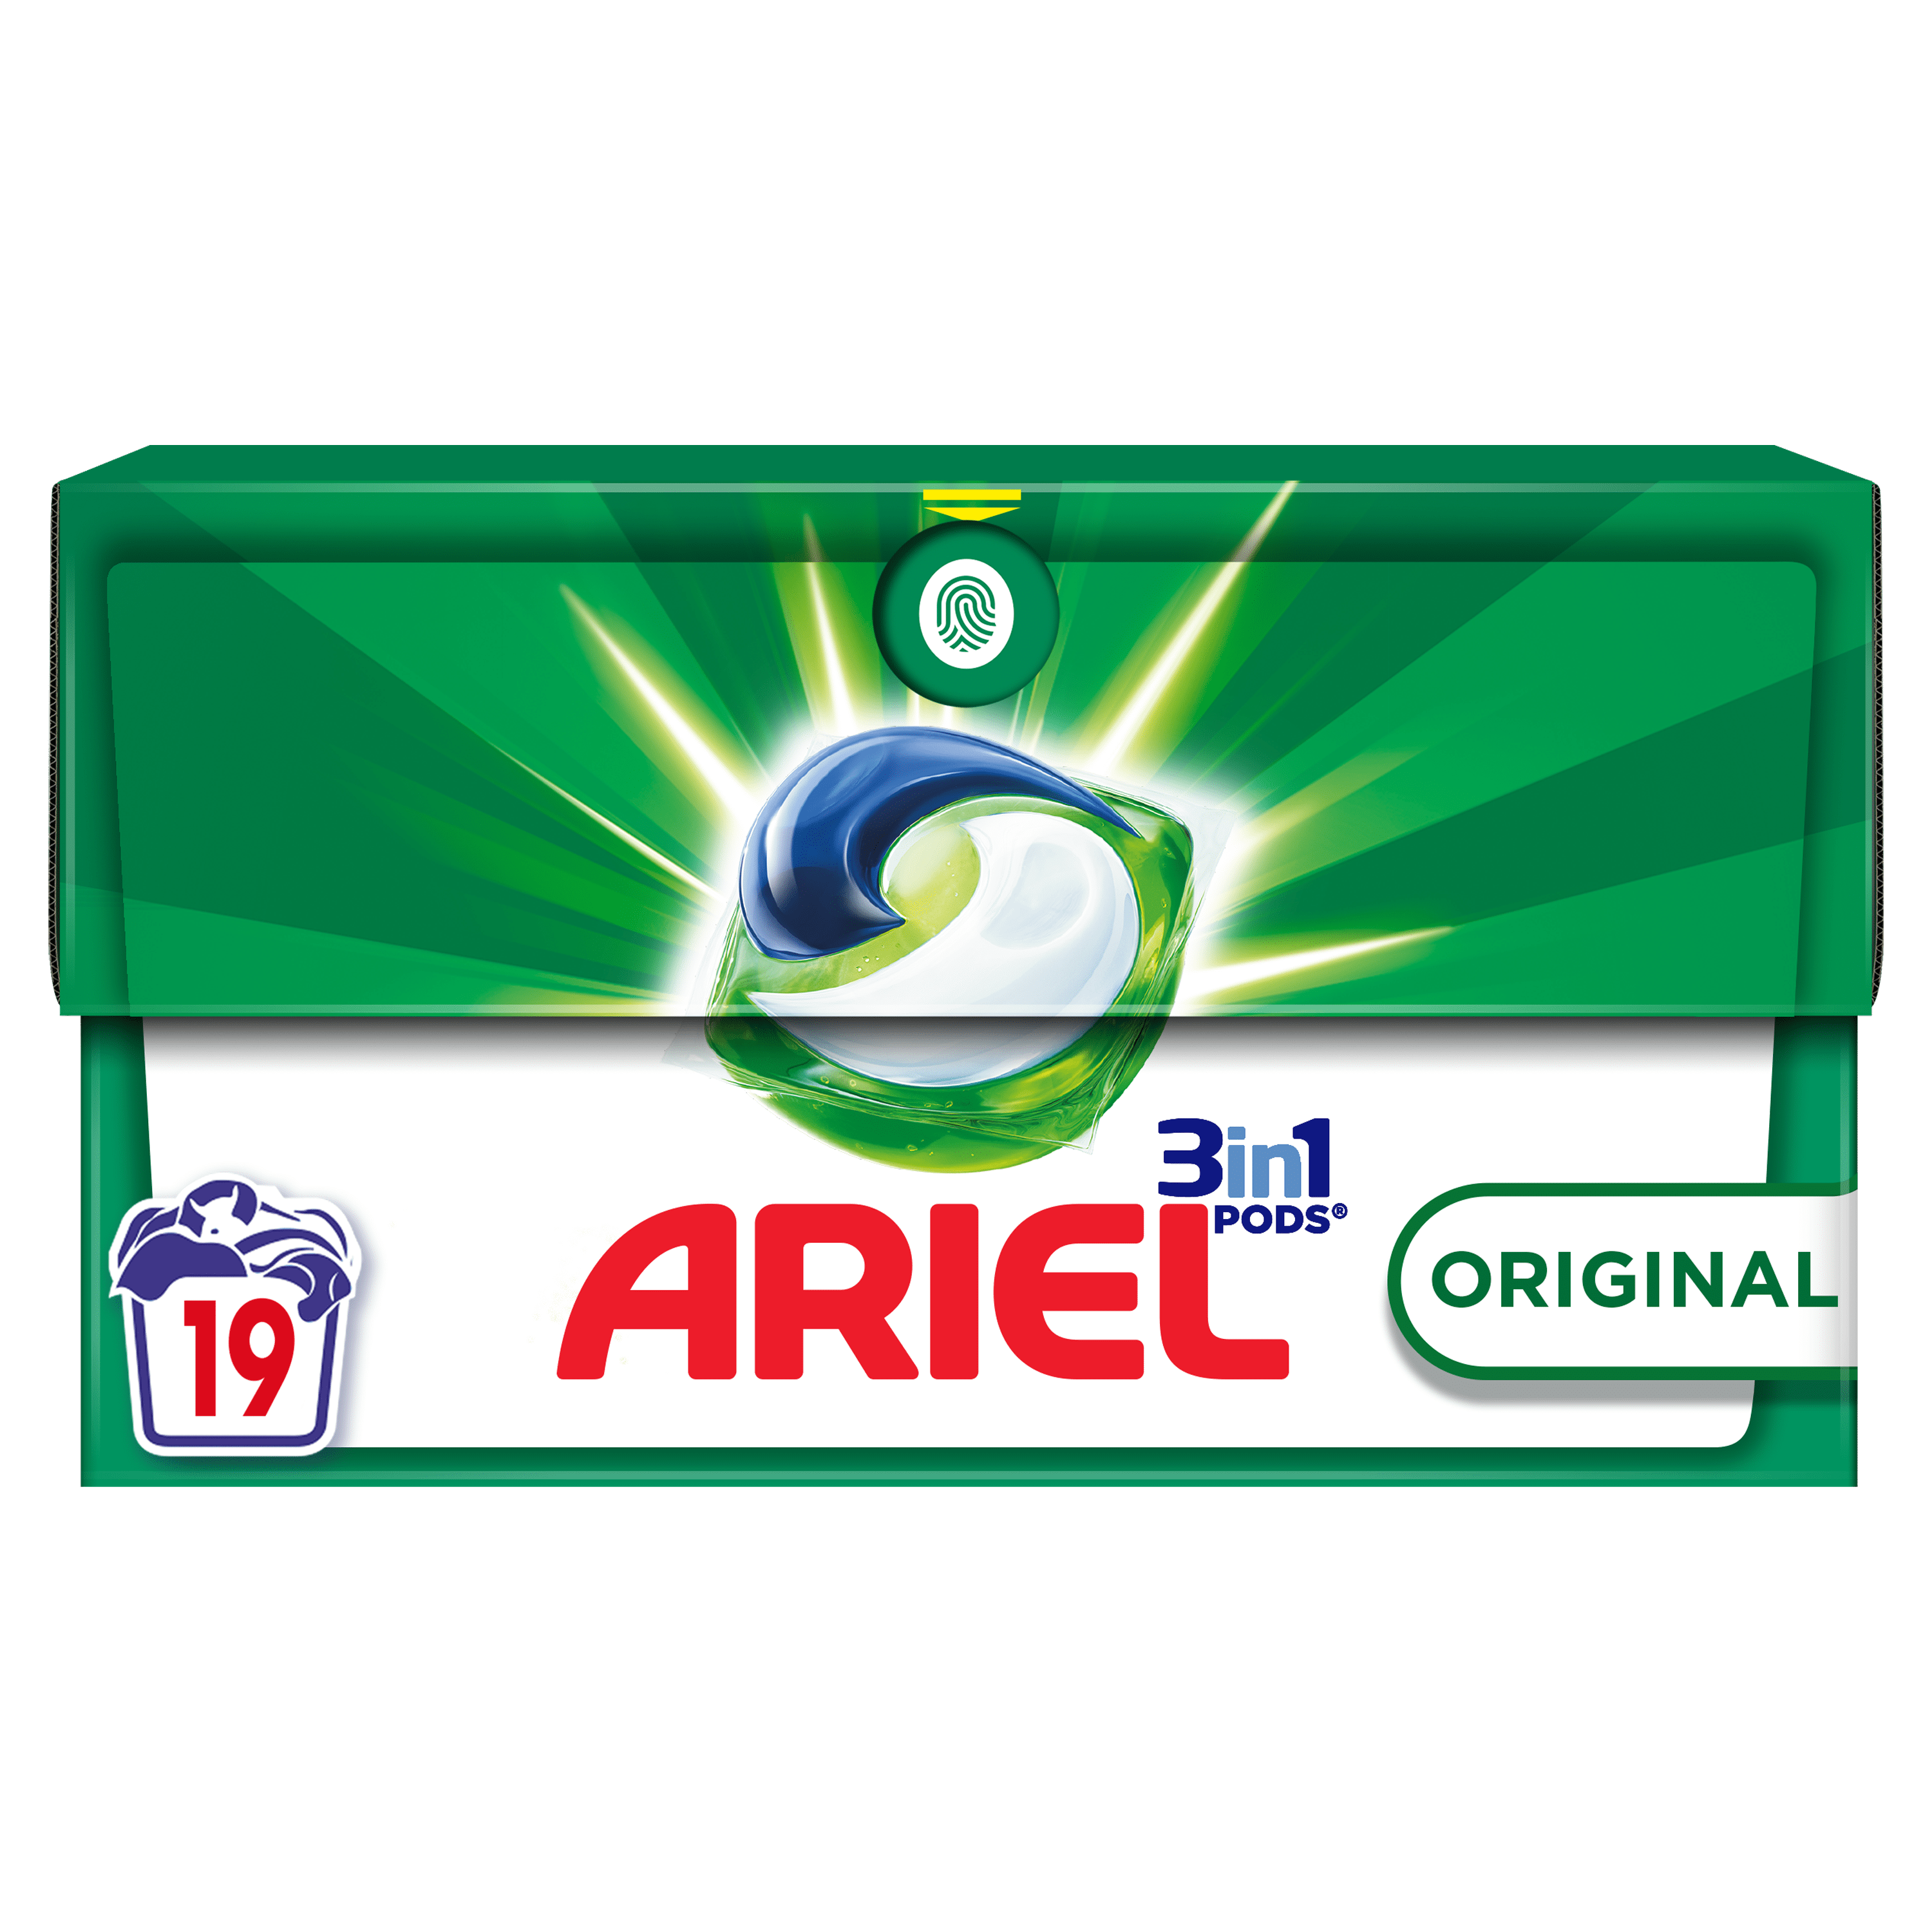 Ariel 3in1 PODS Original